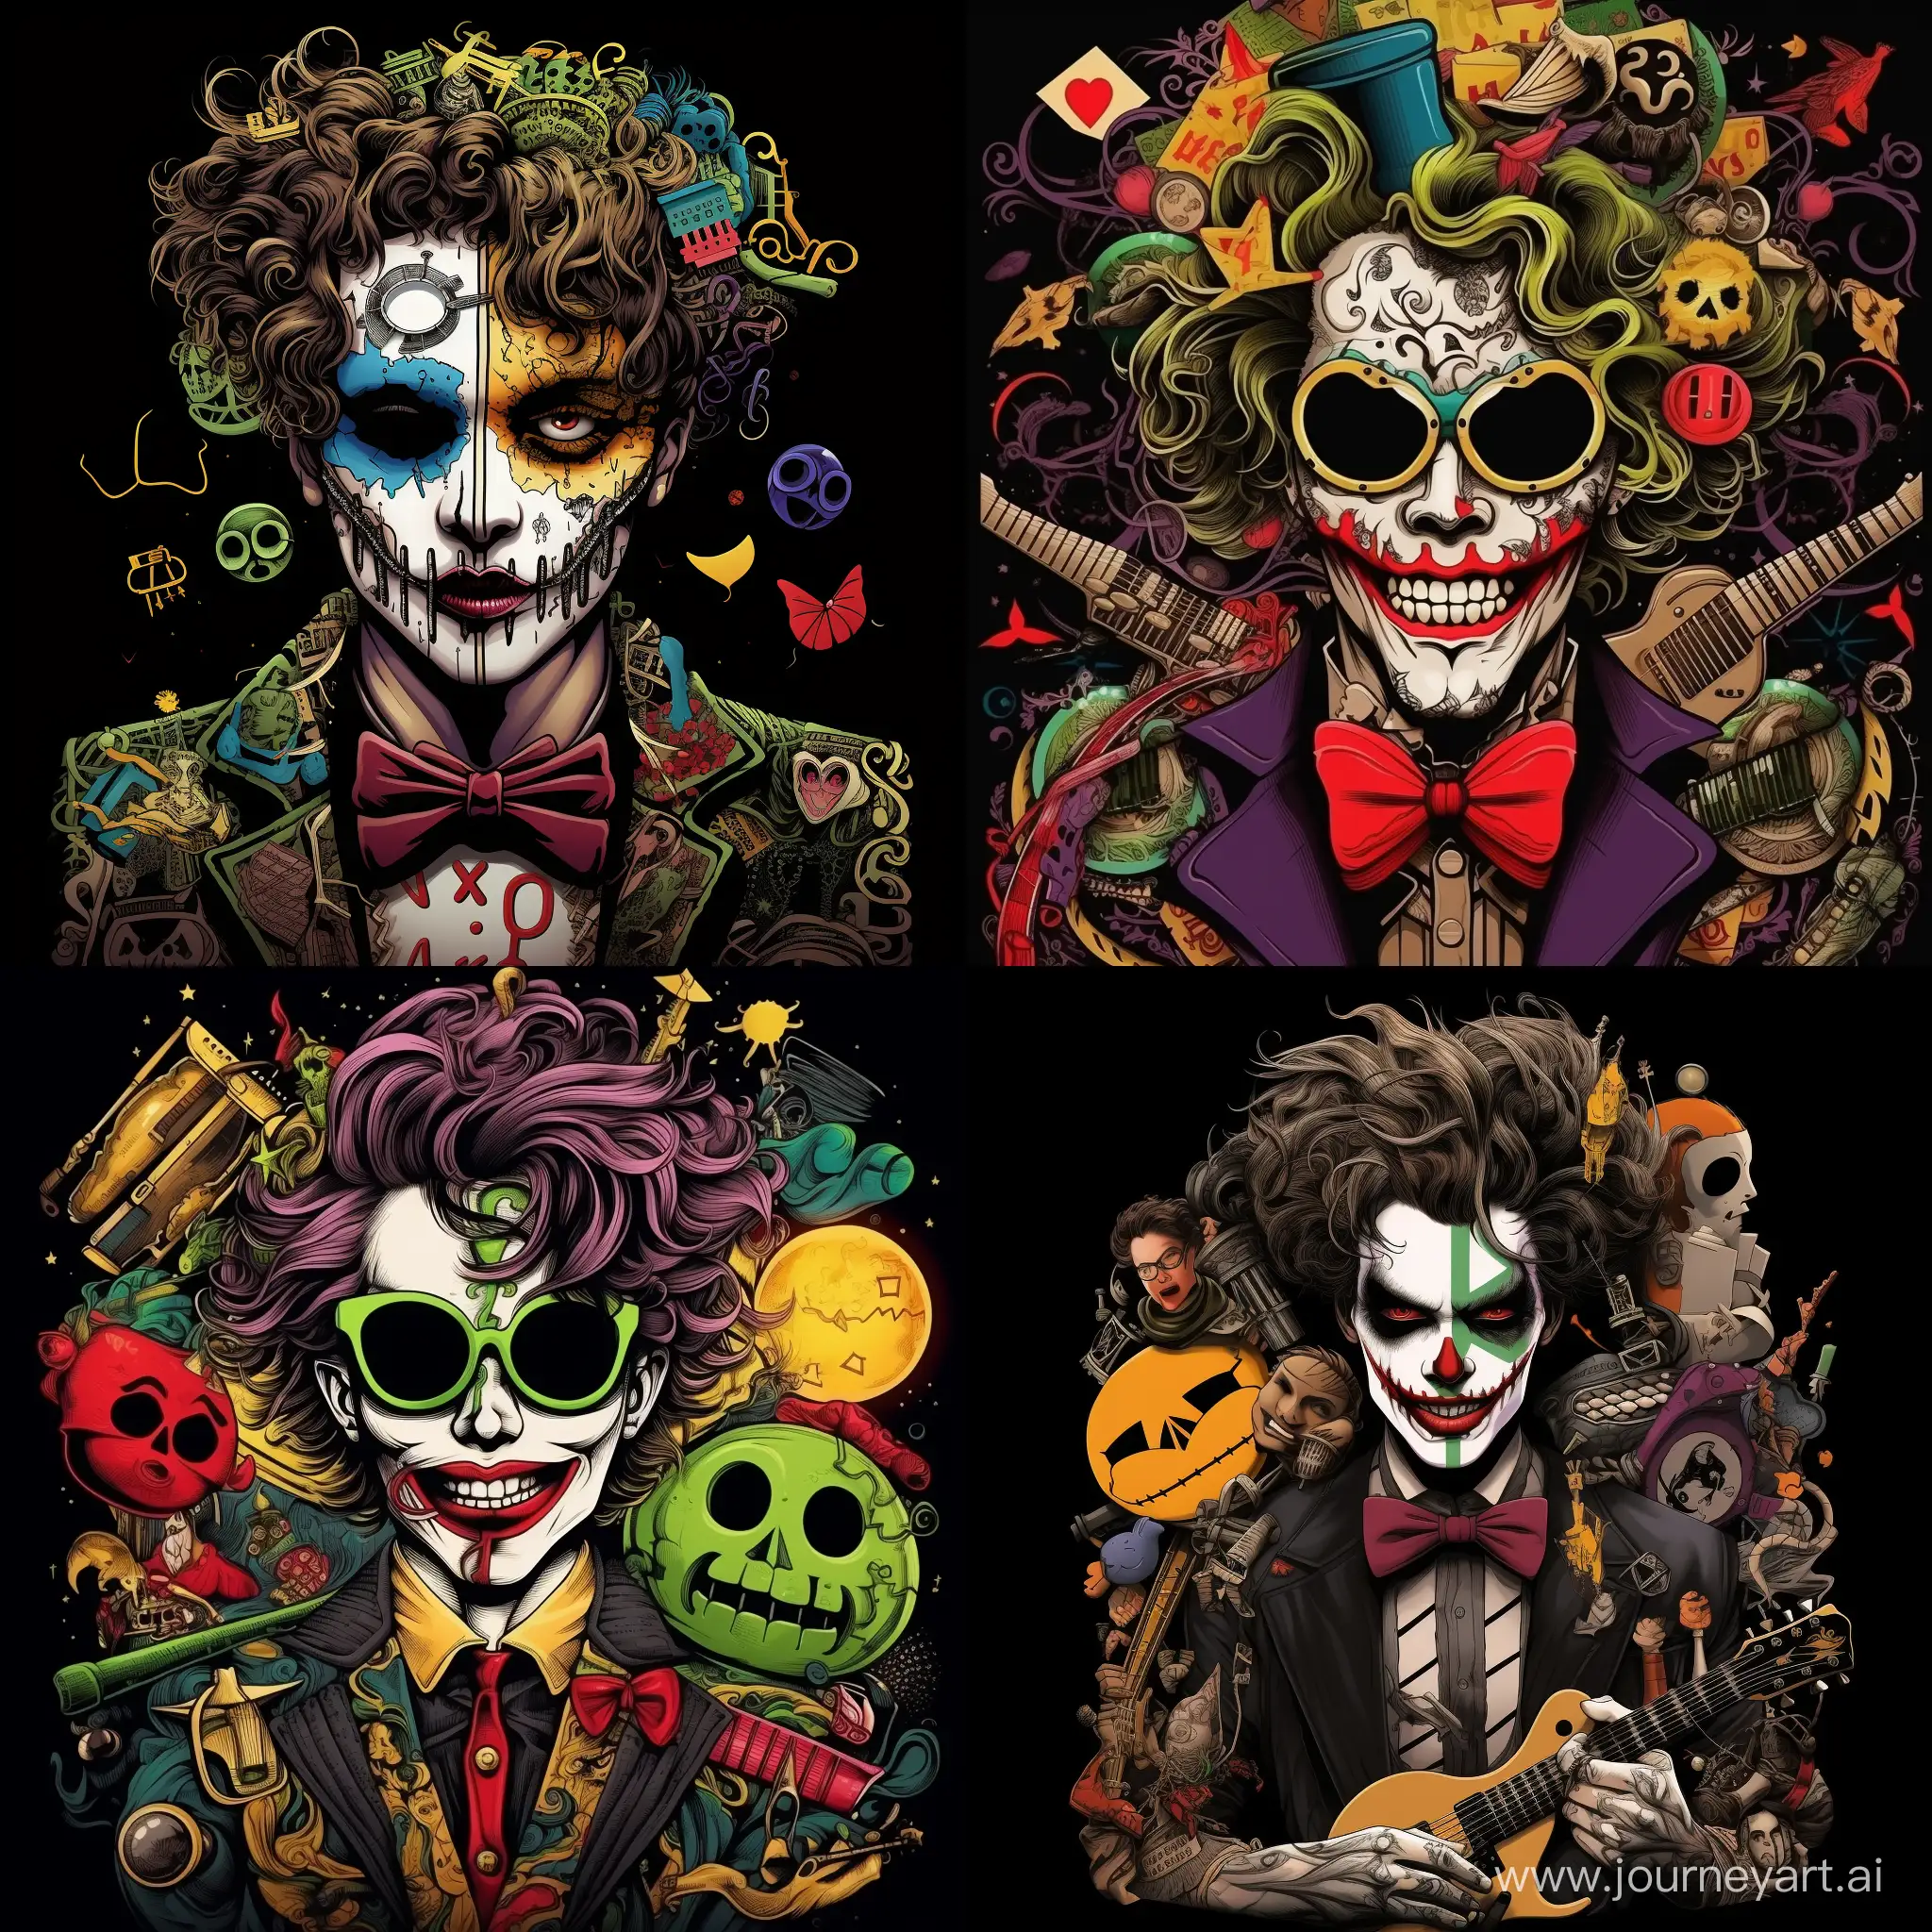 Waist portrait  Joker, surrounded by musical symbols, lots of details, complex colors, caricature, pop art style